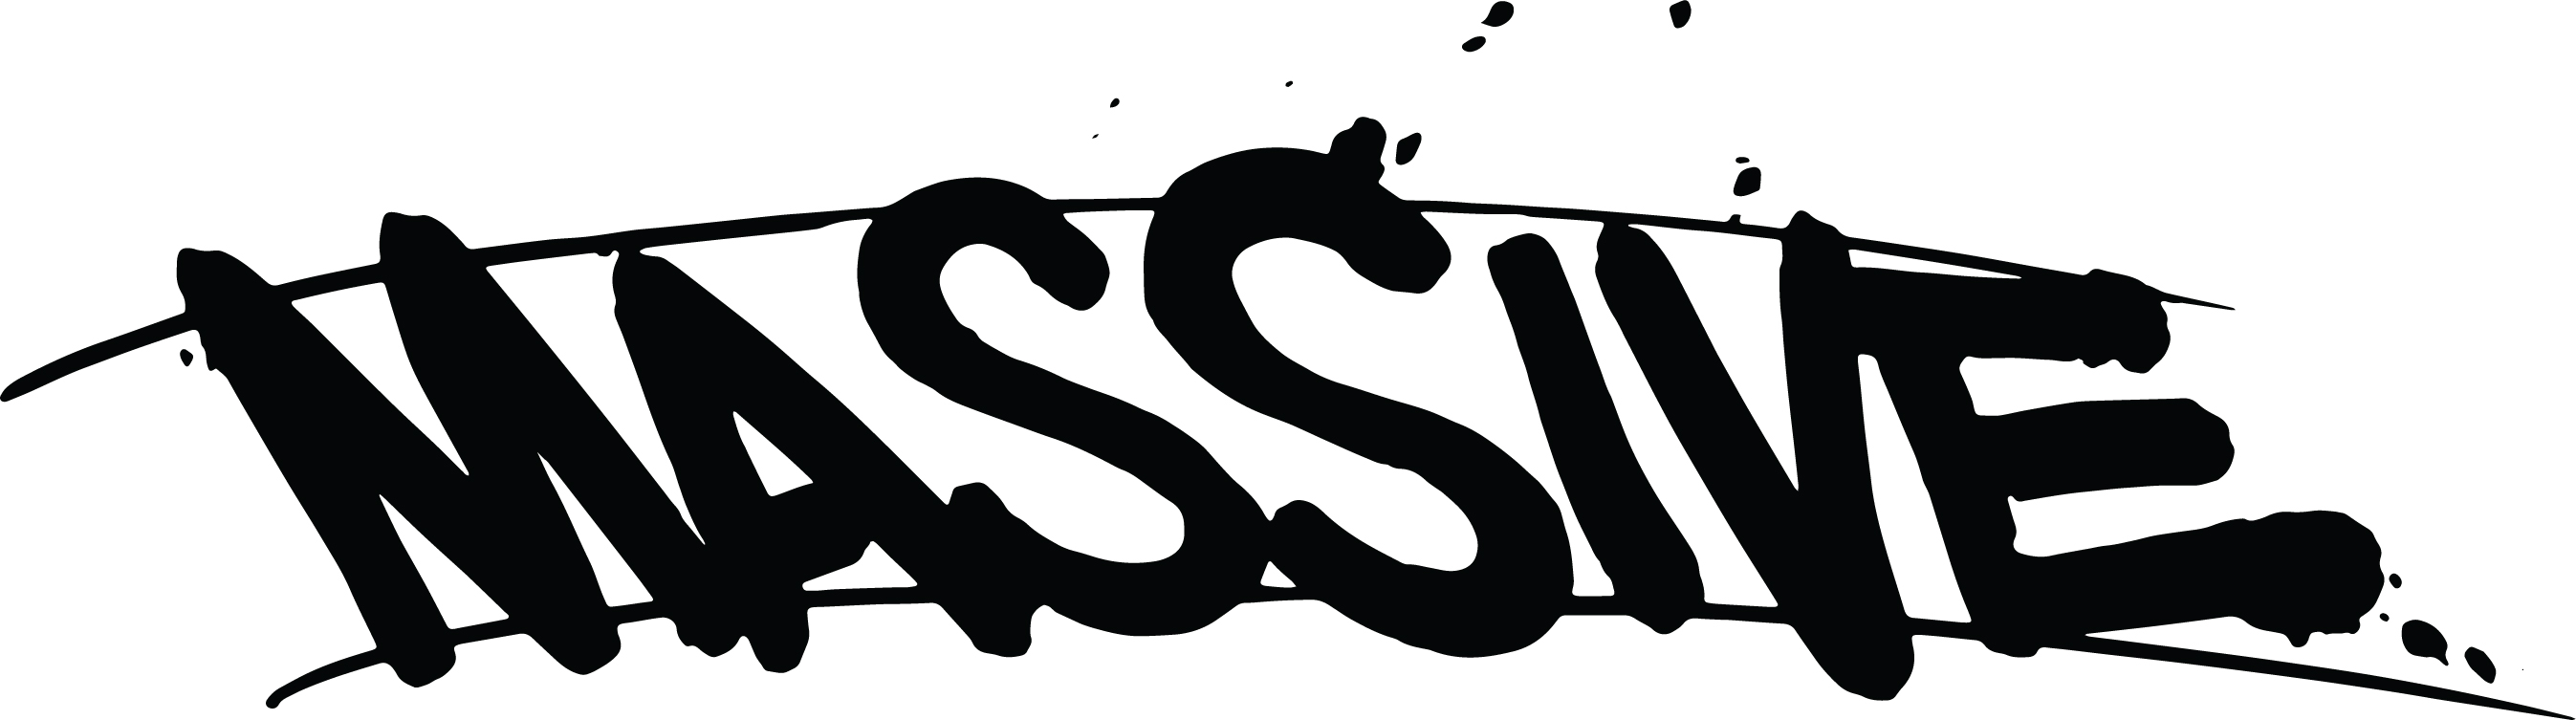 Massive Publishing logo